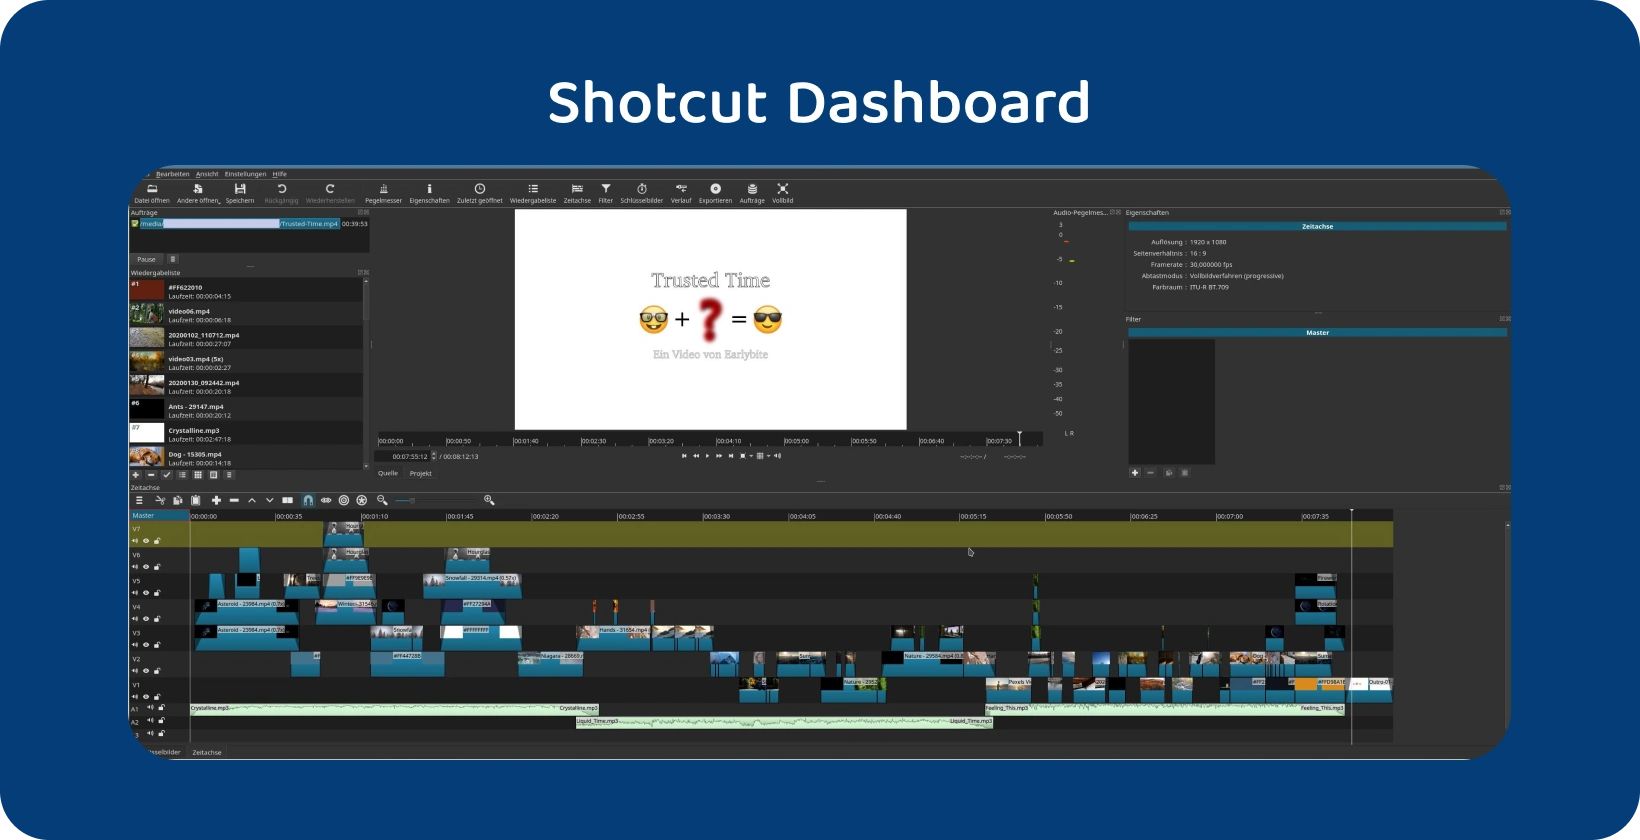 Il software di editing video Shotcut visualizza una timeline complessa con più tracce, indicando un progetto avanzato.